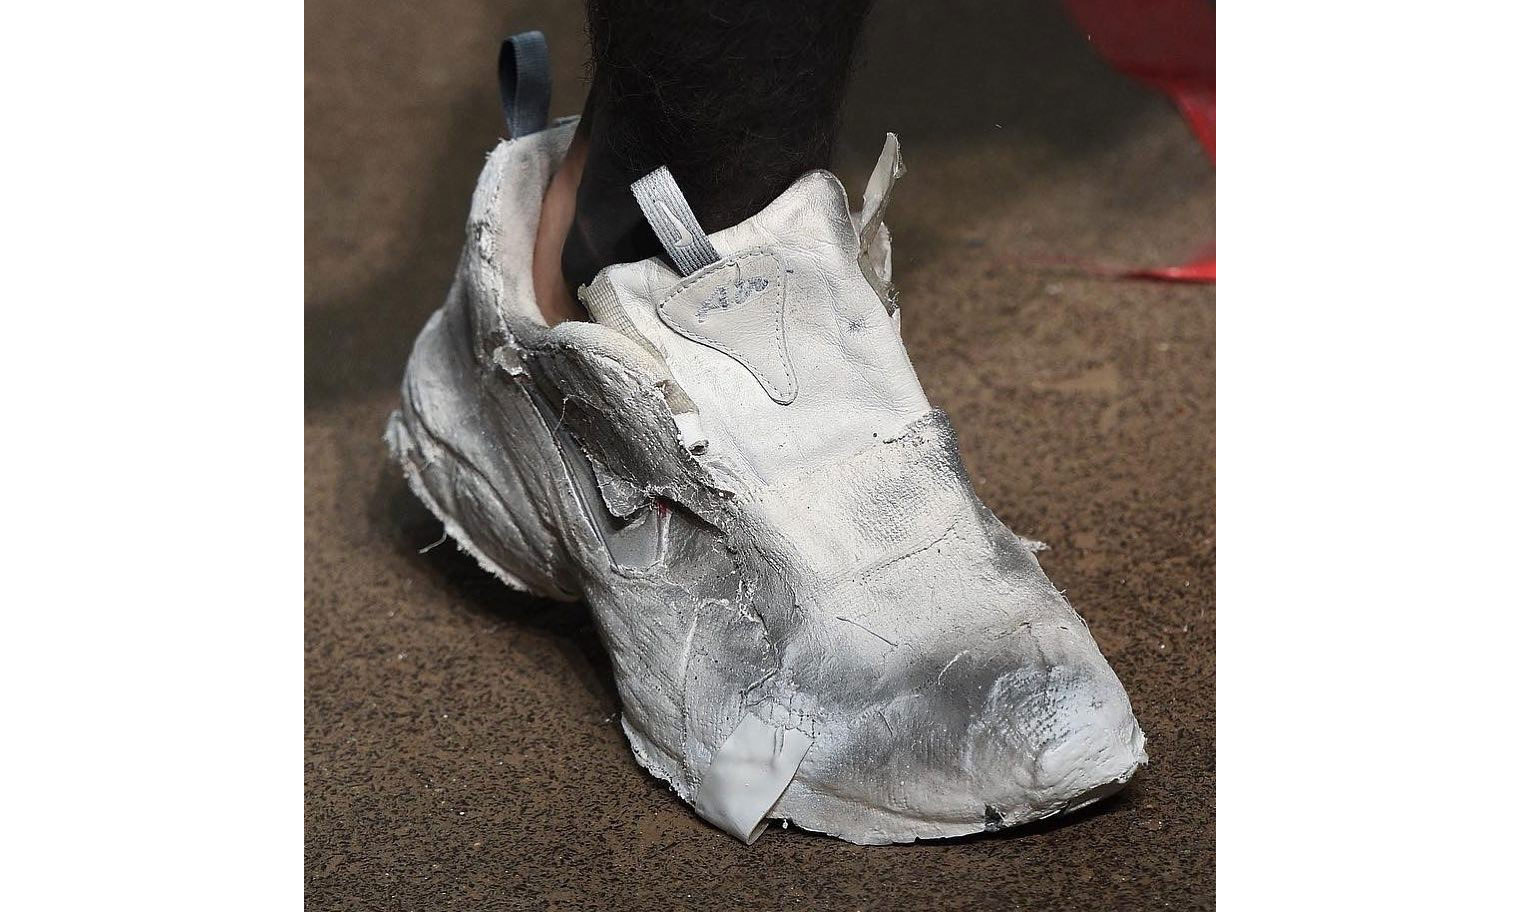 来看看 A-COLD-WALL* x Nike 的新联名鞋款雏形